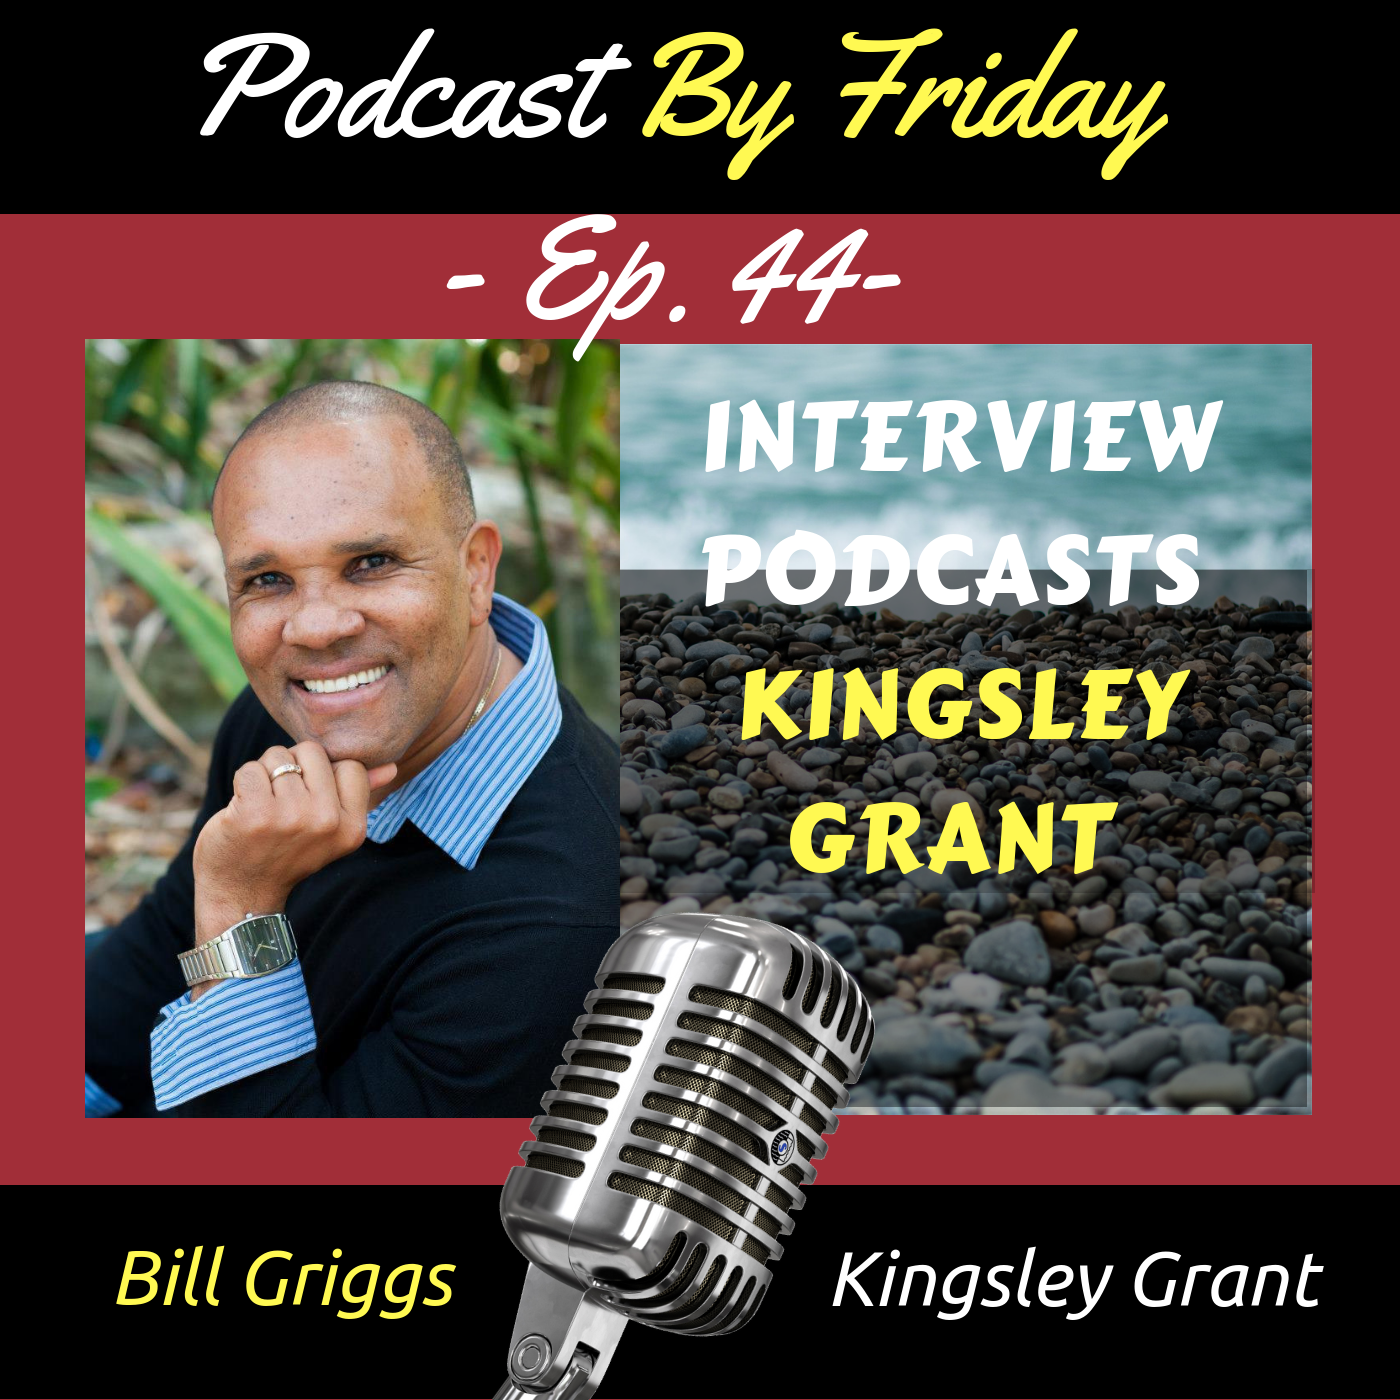 Kingsley Grant story